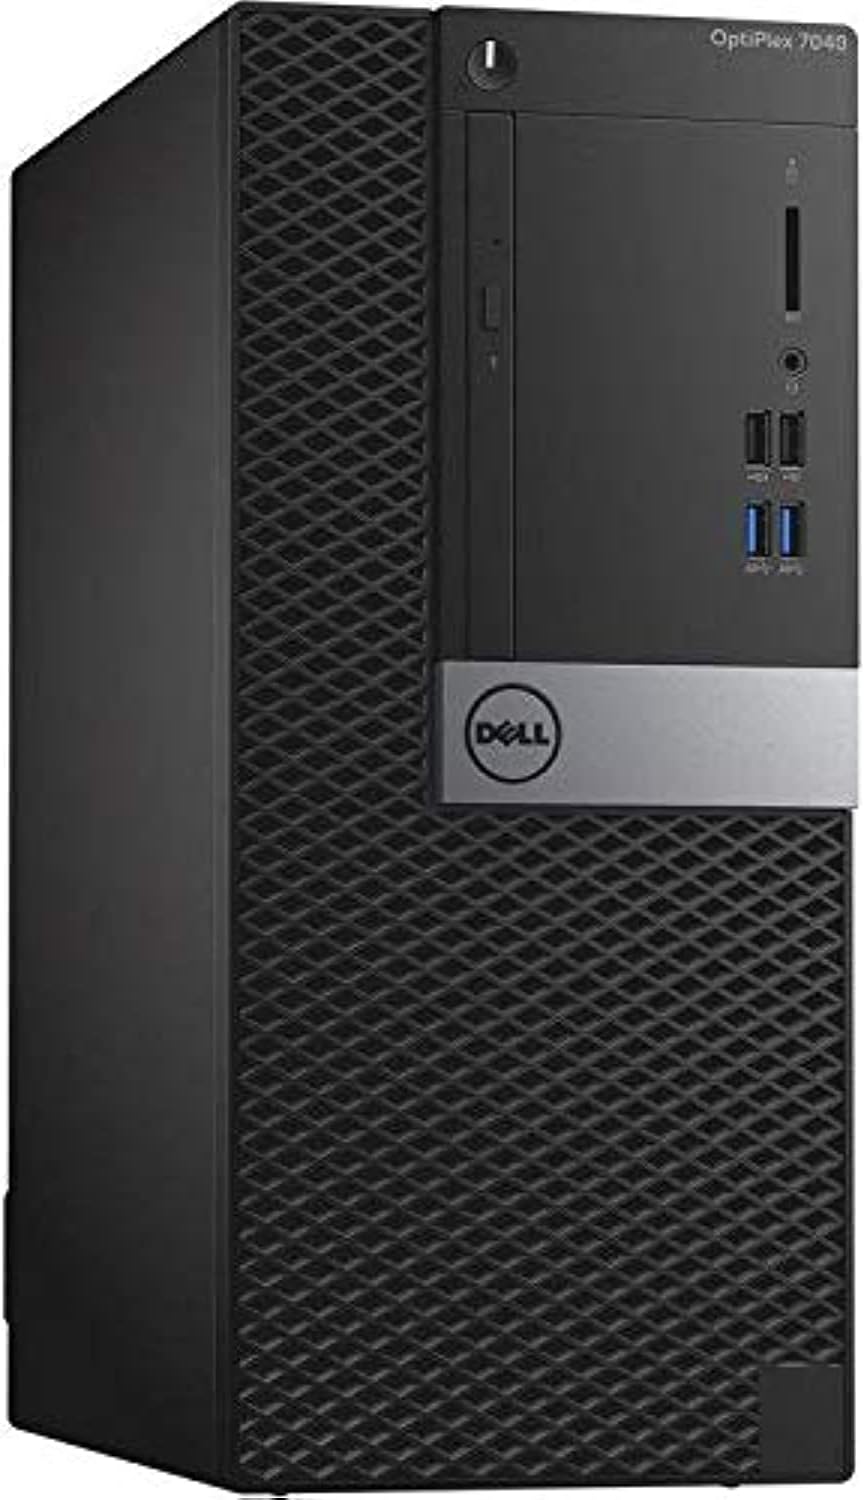 Dell Optiplex 7040 Mini Tower PC, Intel Core i7-6700, 1 TB HDD, 8 GB RAM, Intel HD Graphics, DOS - Black